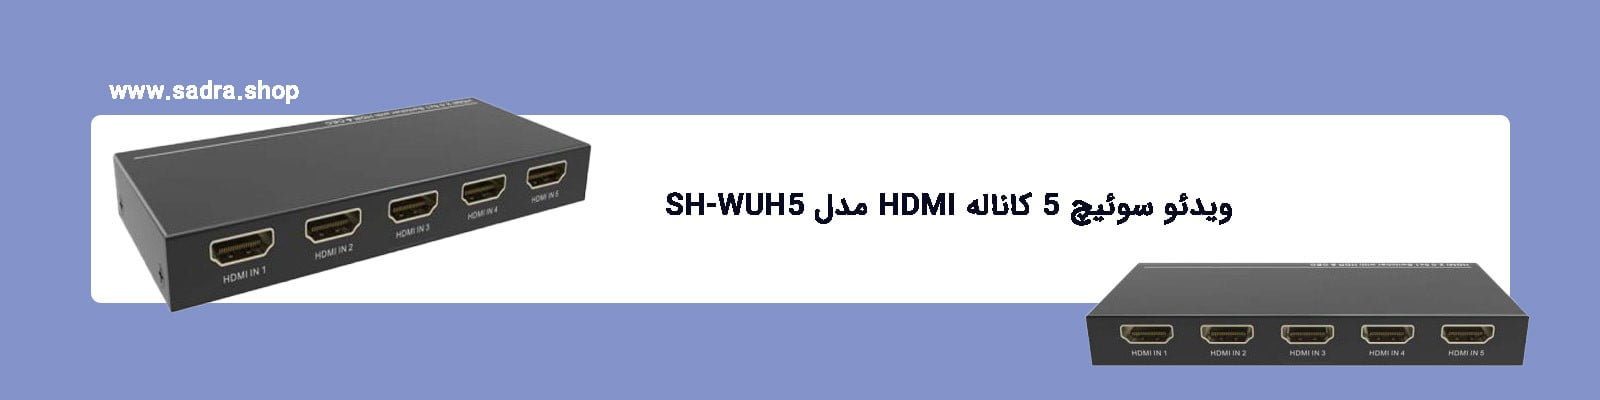 ویدئو سوئیچ 5 کاناله HDMI مدل SH-WUH5